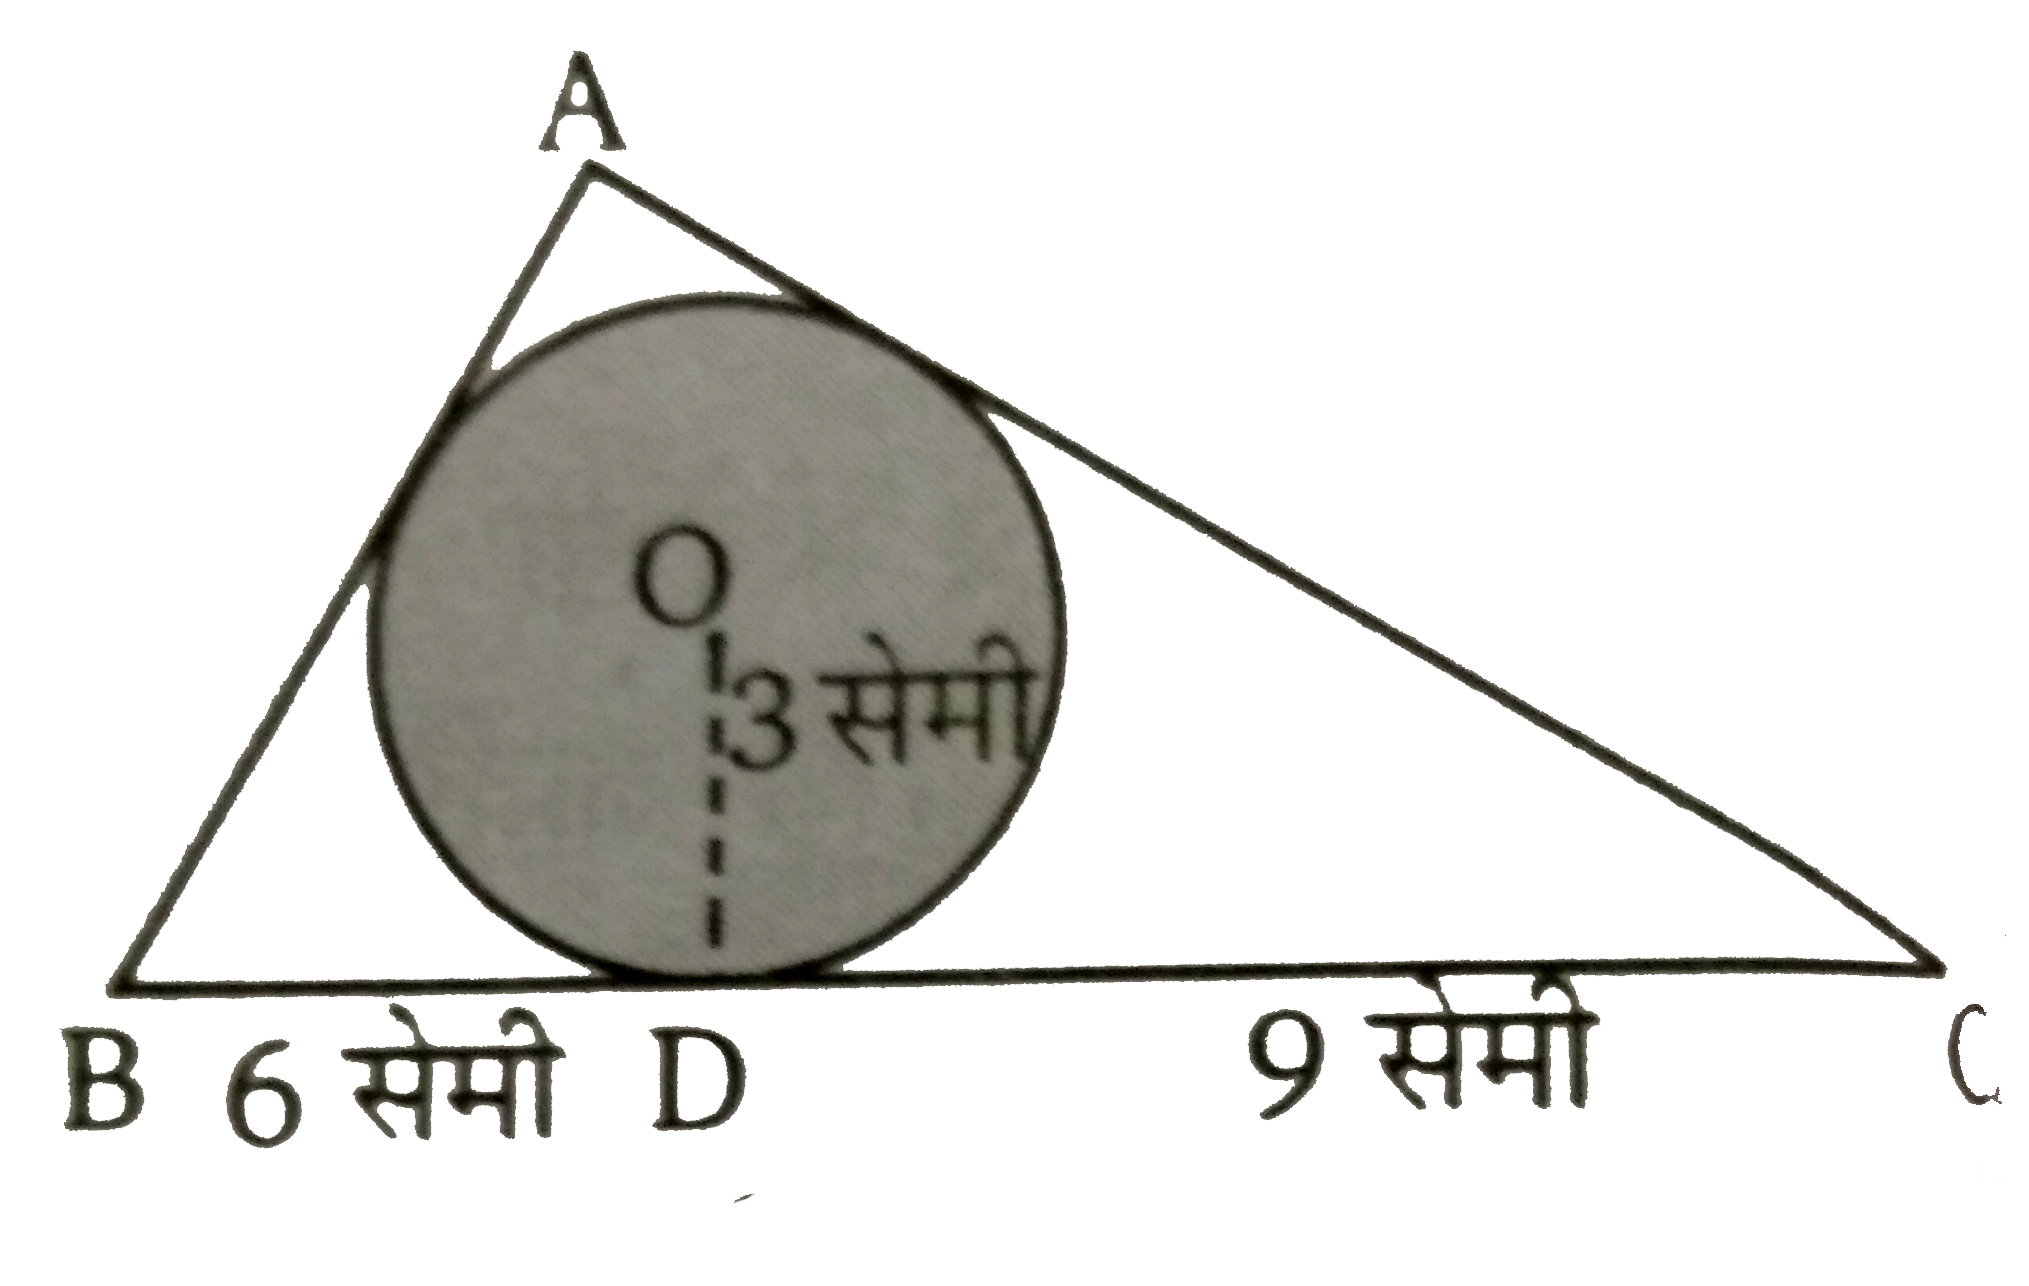 सलंग्न चित्र में, 3  सेमी त्रिज्या वाले वृत्त के परिगत एक Delta ABC  इस प्रकार है कि रेखाखण्ड BD  व  DC  व कि लम्बाई क्रमशः 6  व 9  सेमी है। यदि त्रिभुज का क्षेत्रफल 54